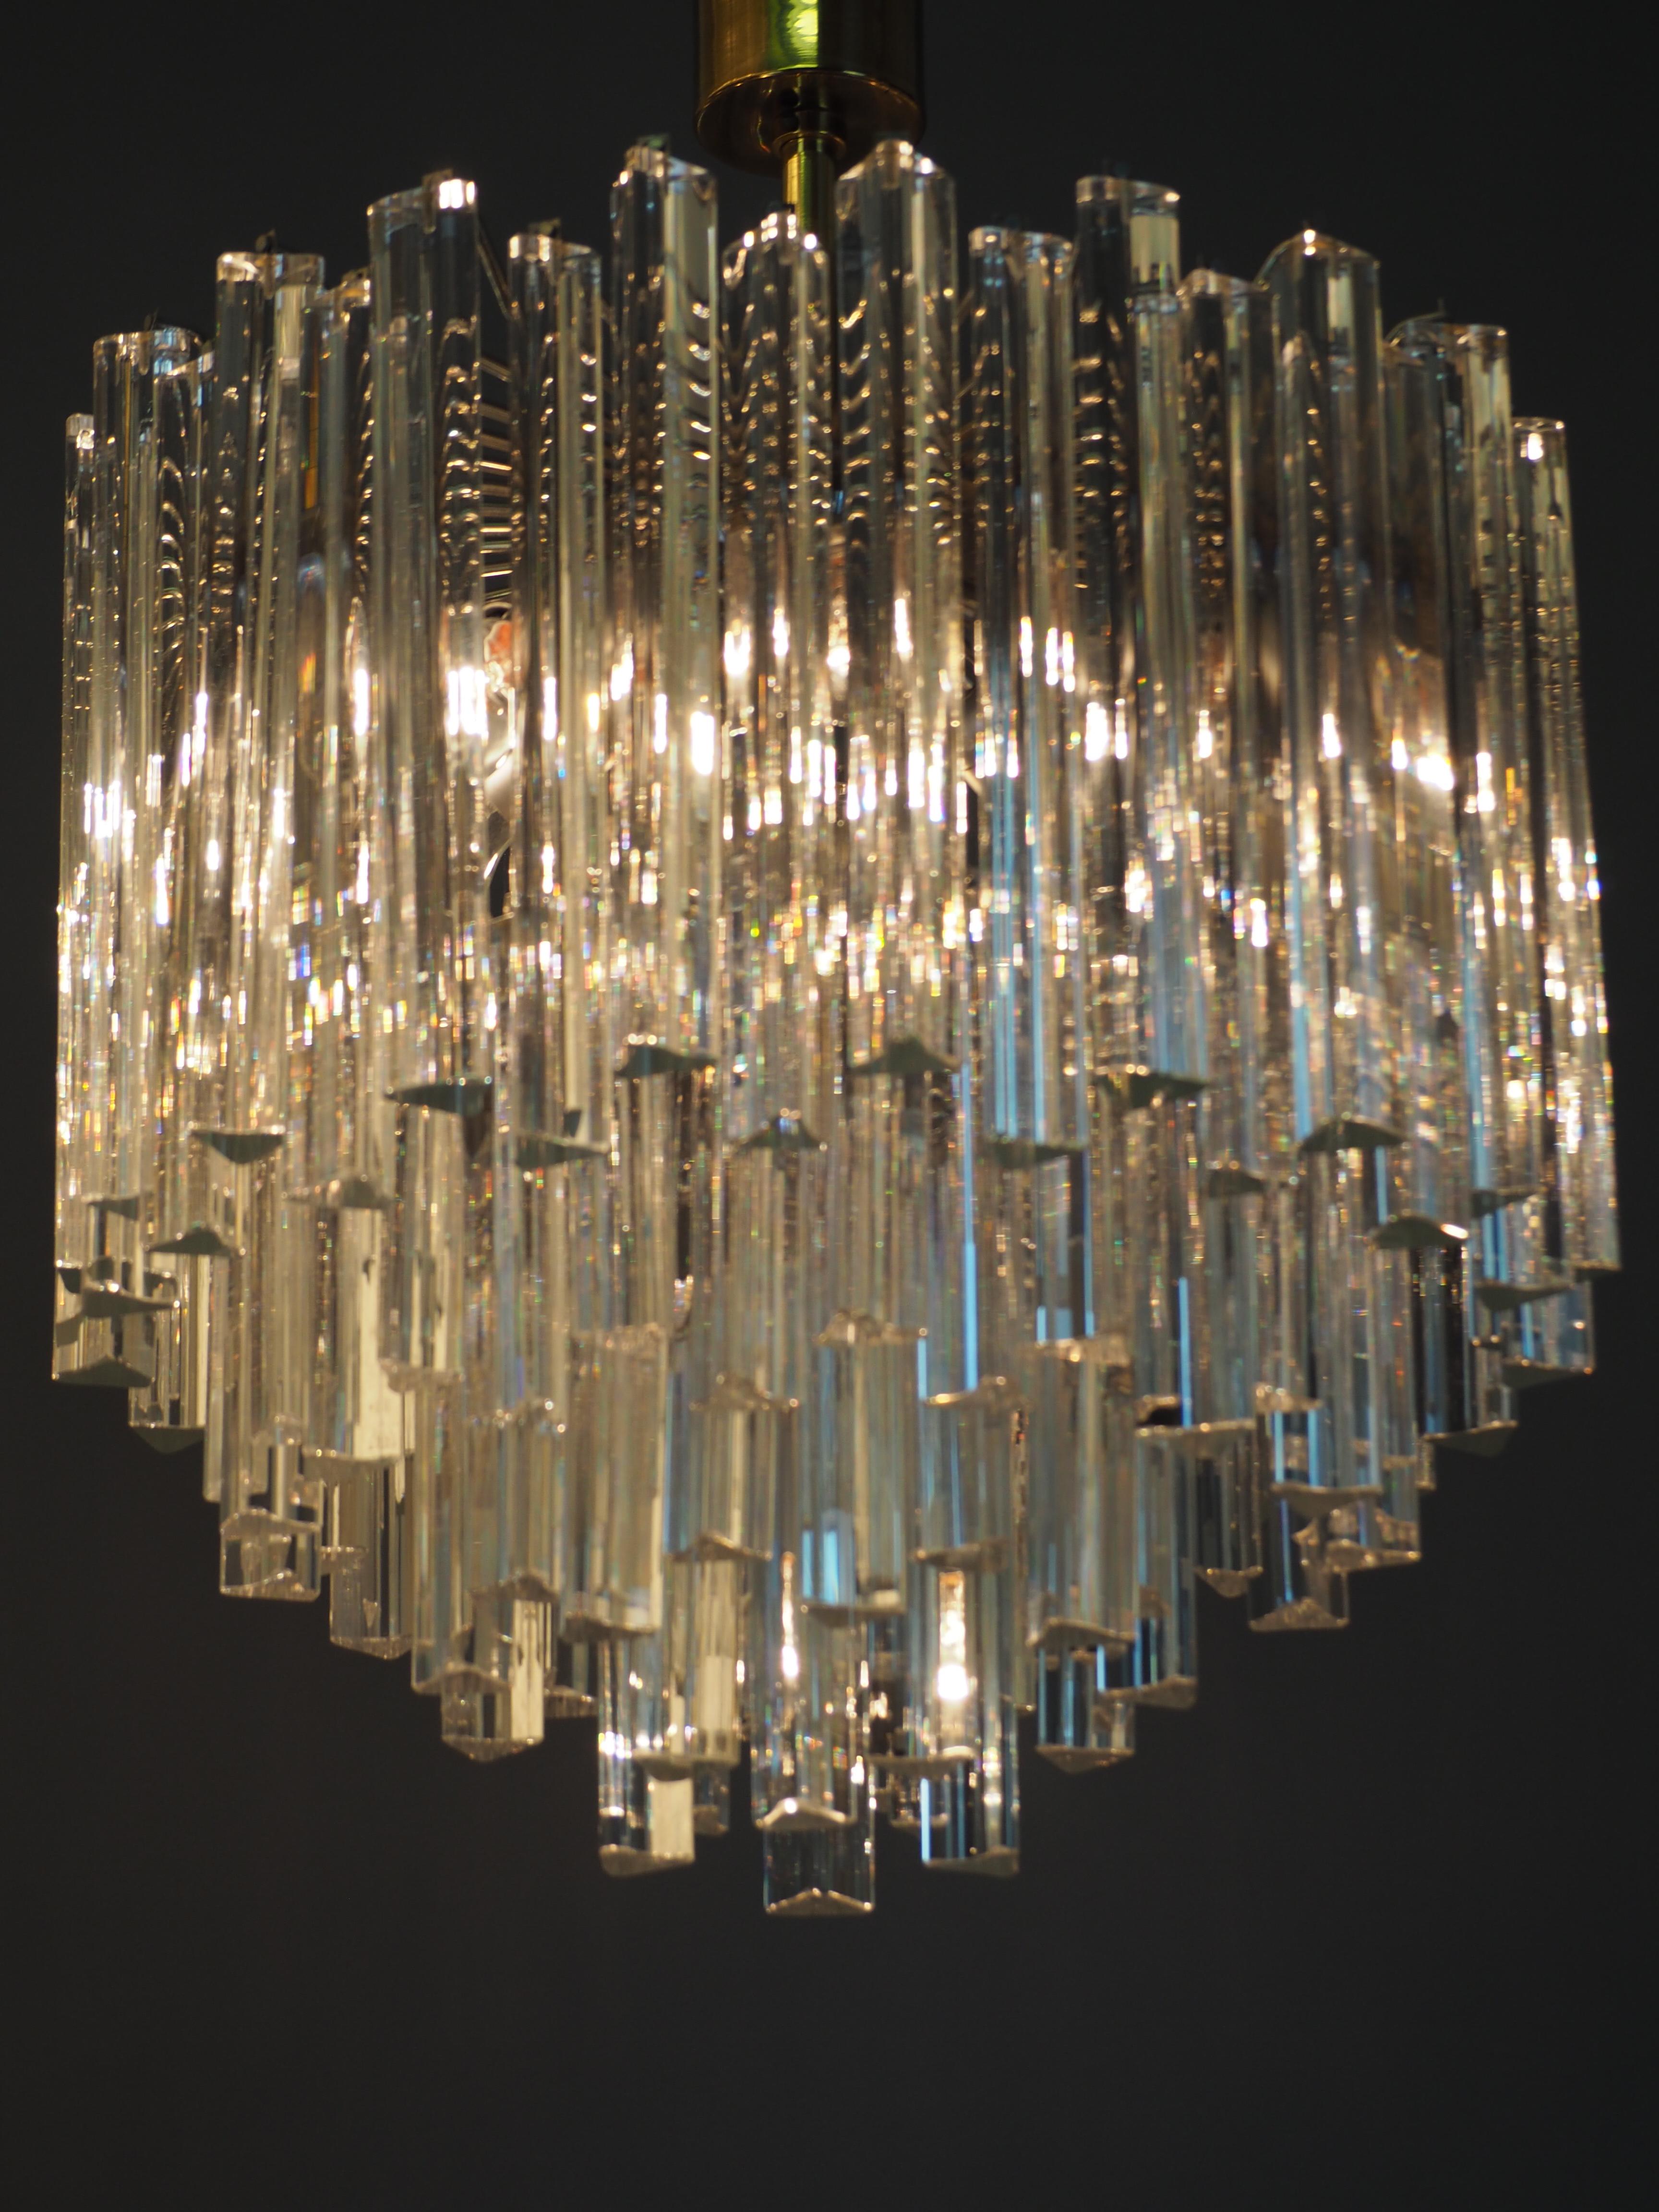 Un très élégant et grand lustre de Murano à quatre niveaux, attribué à Venini.
Ce luminaire est composé de 96 verres de Murano 